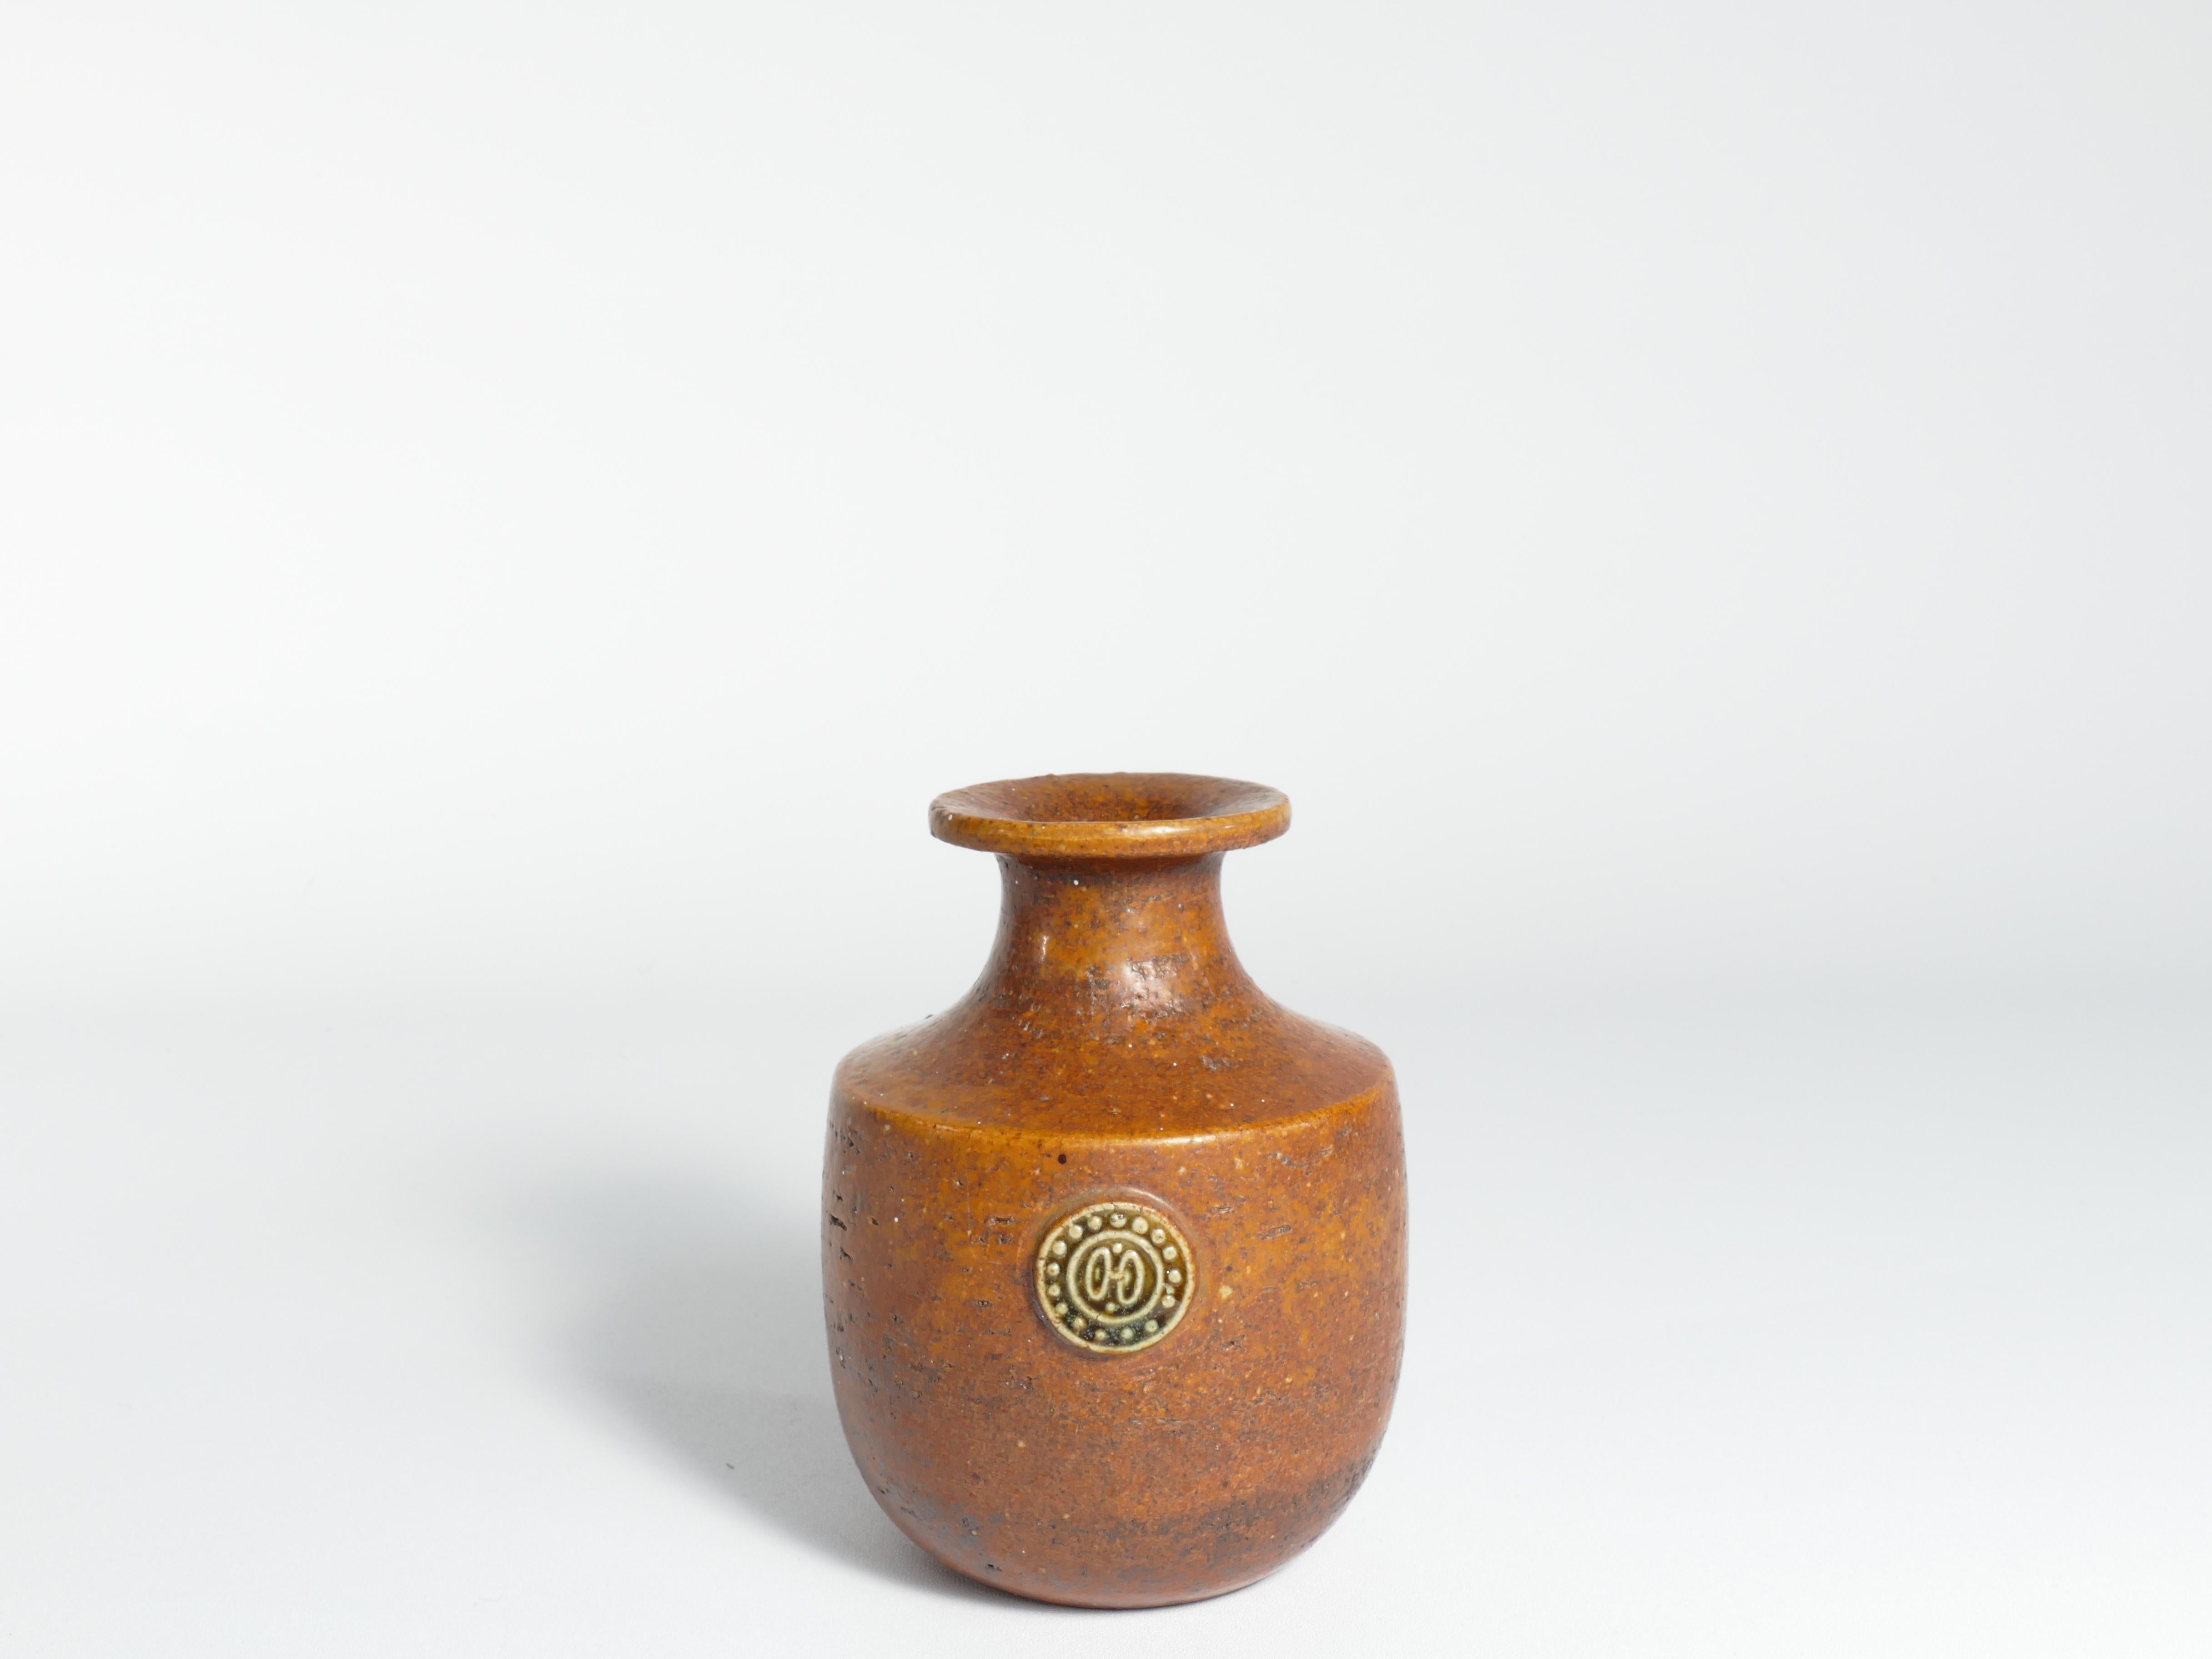 Le vase de Sven Wejsfelt présente une forme robuste et terreuse, ornée d'une riche glaçure brune et d'un cachet en relief complexe. Cette création en forme de chamotte date des années 1970 et constitue un ajout notable à la série Sahara. Véritable